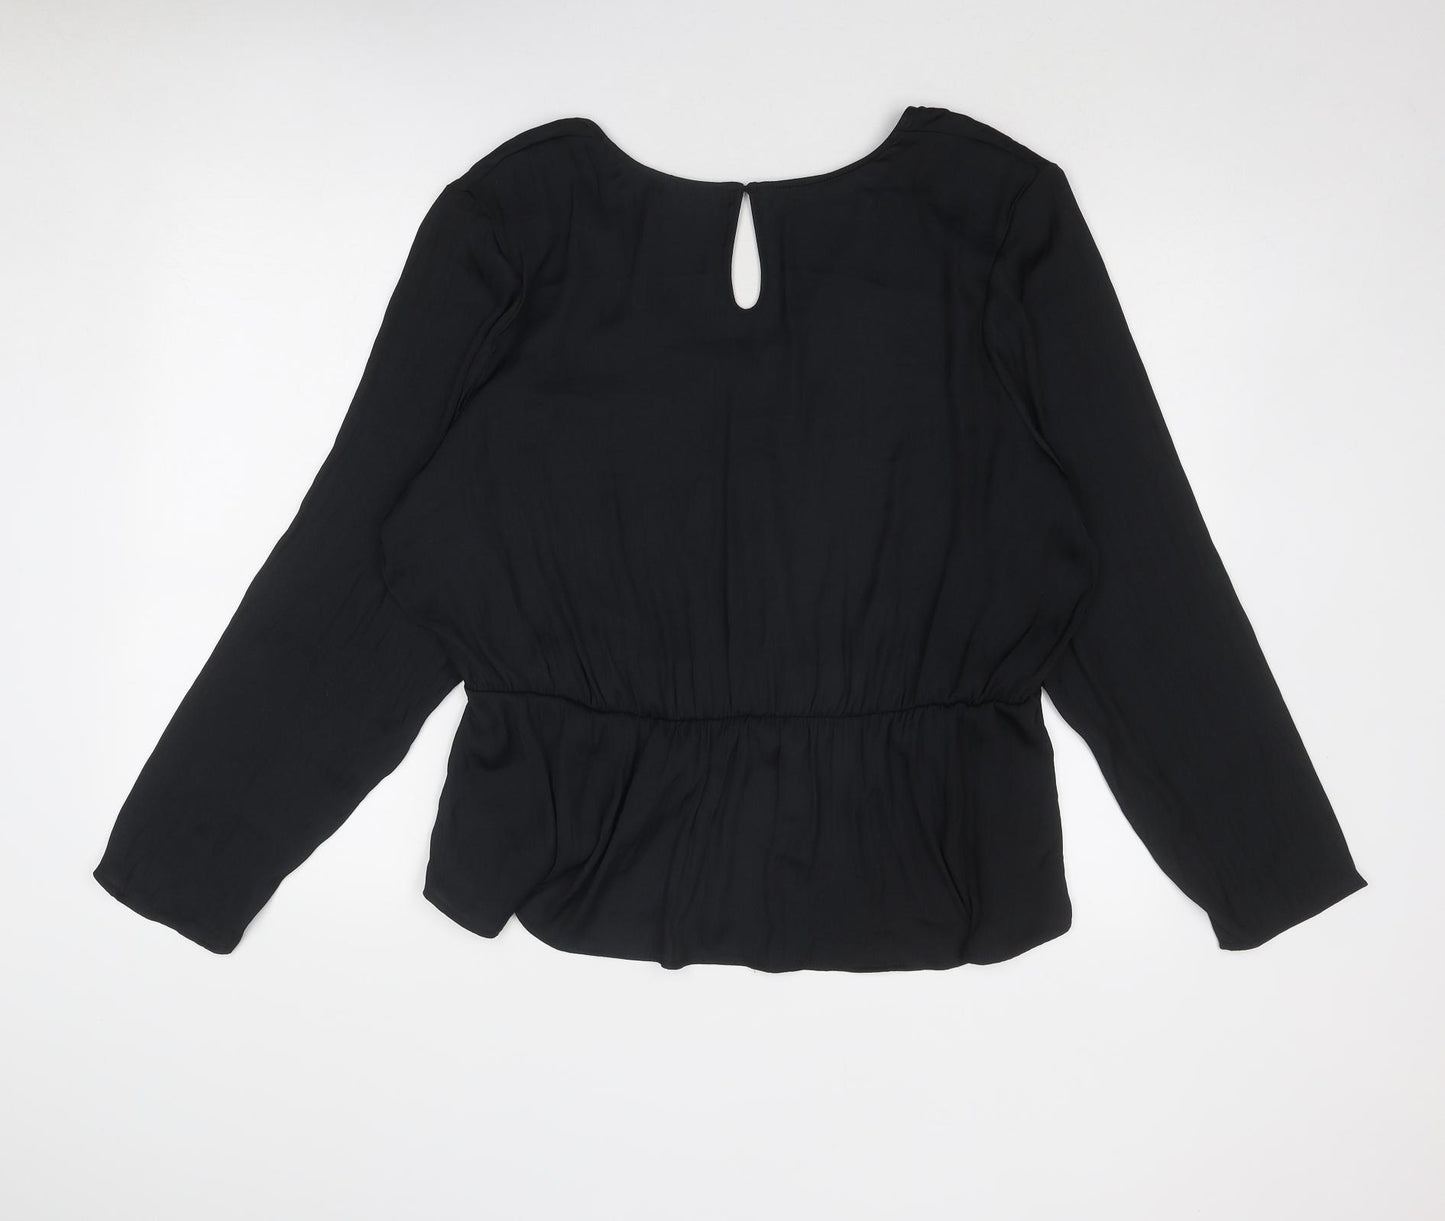 Marks and Spencer Womens Black Polyester Basic Blouse Size 22 V-Neck - Peplum